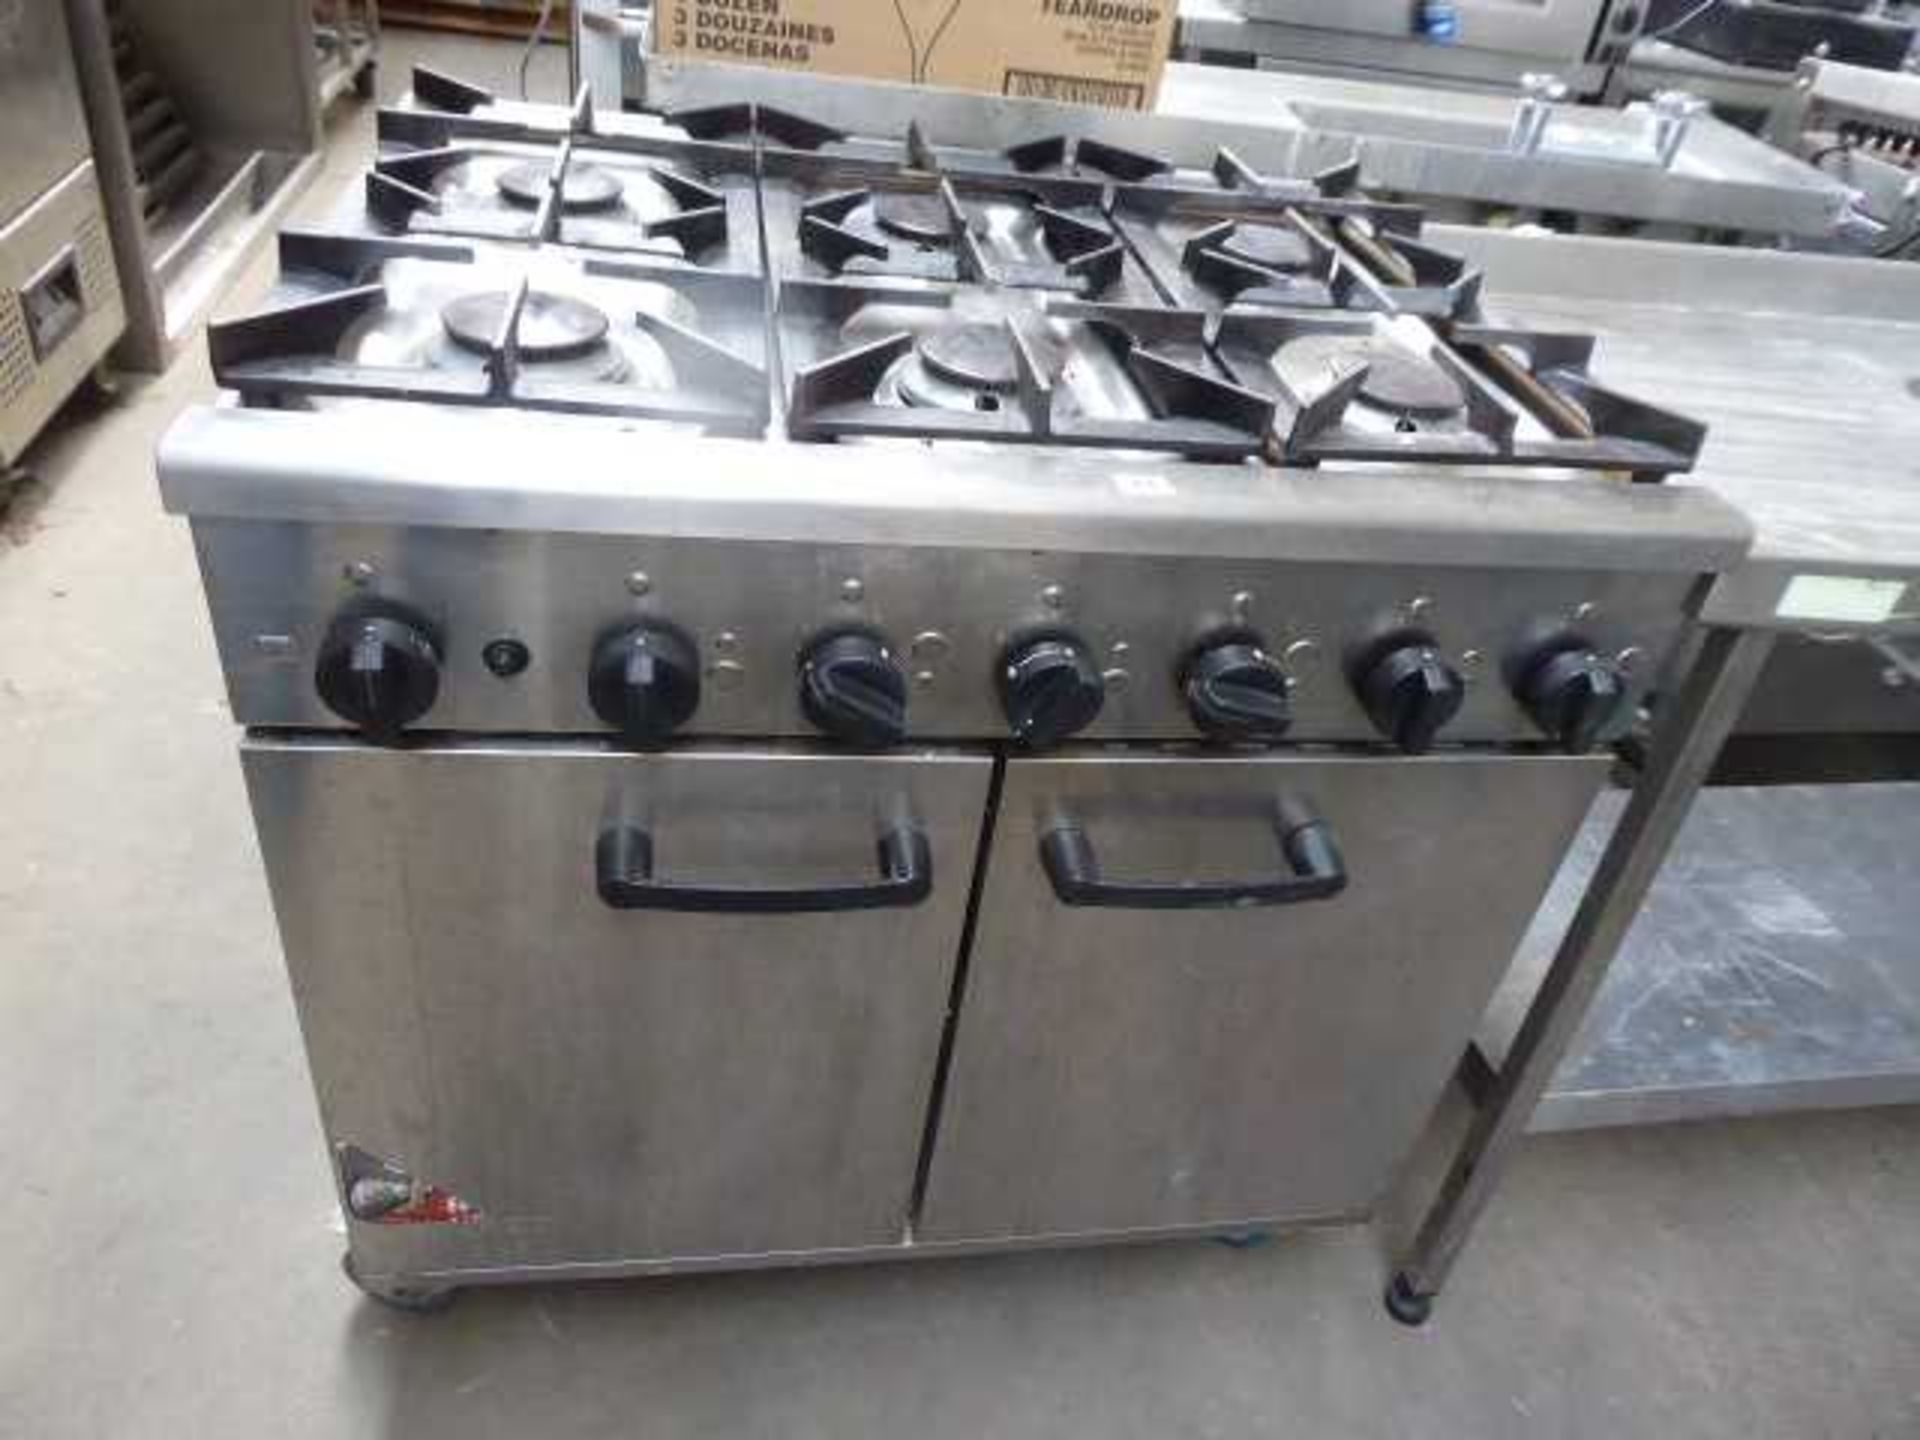 90cm gas Burco 6 burner cooker with double door oven under